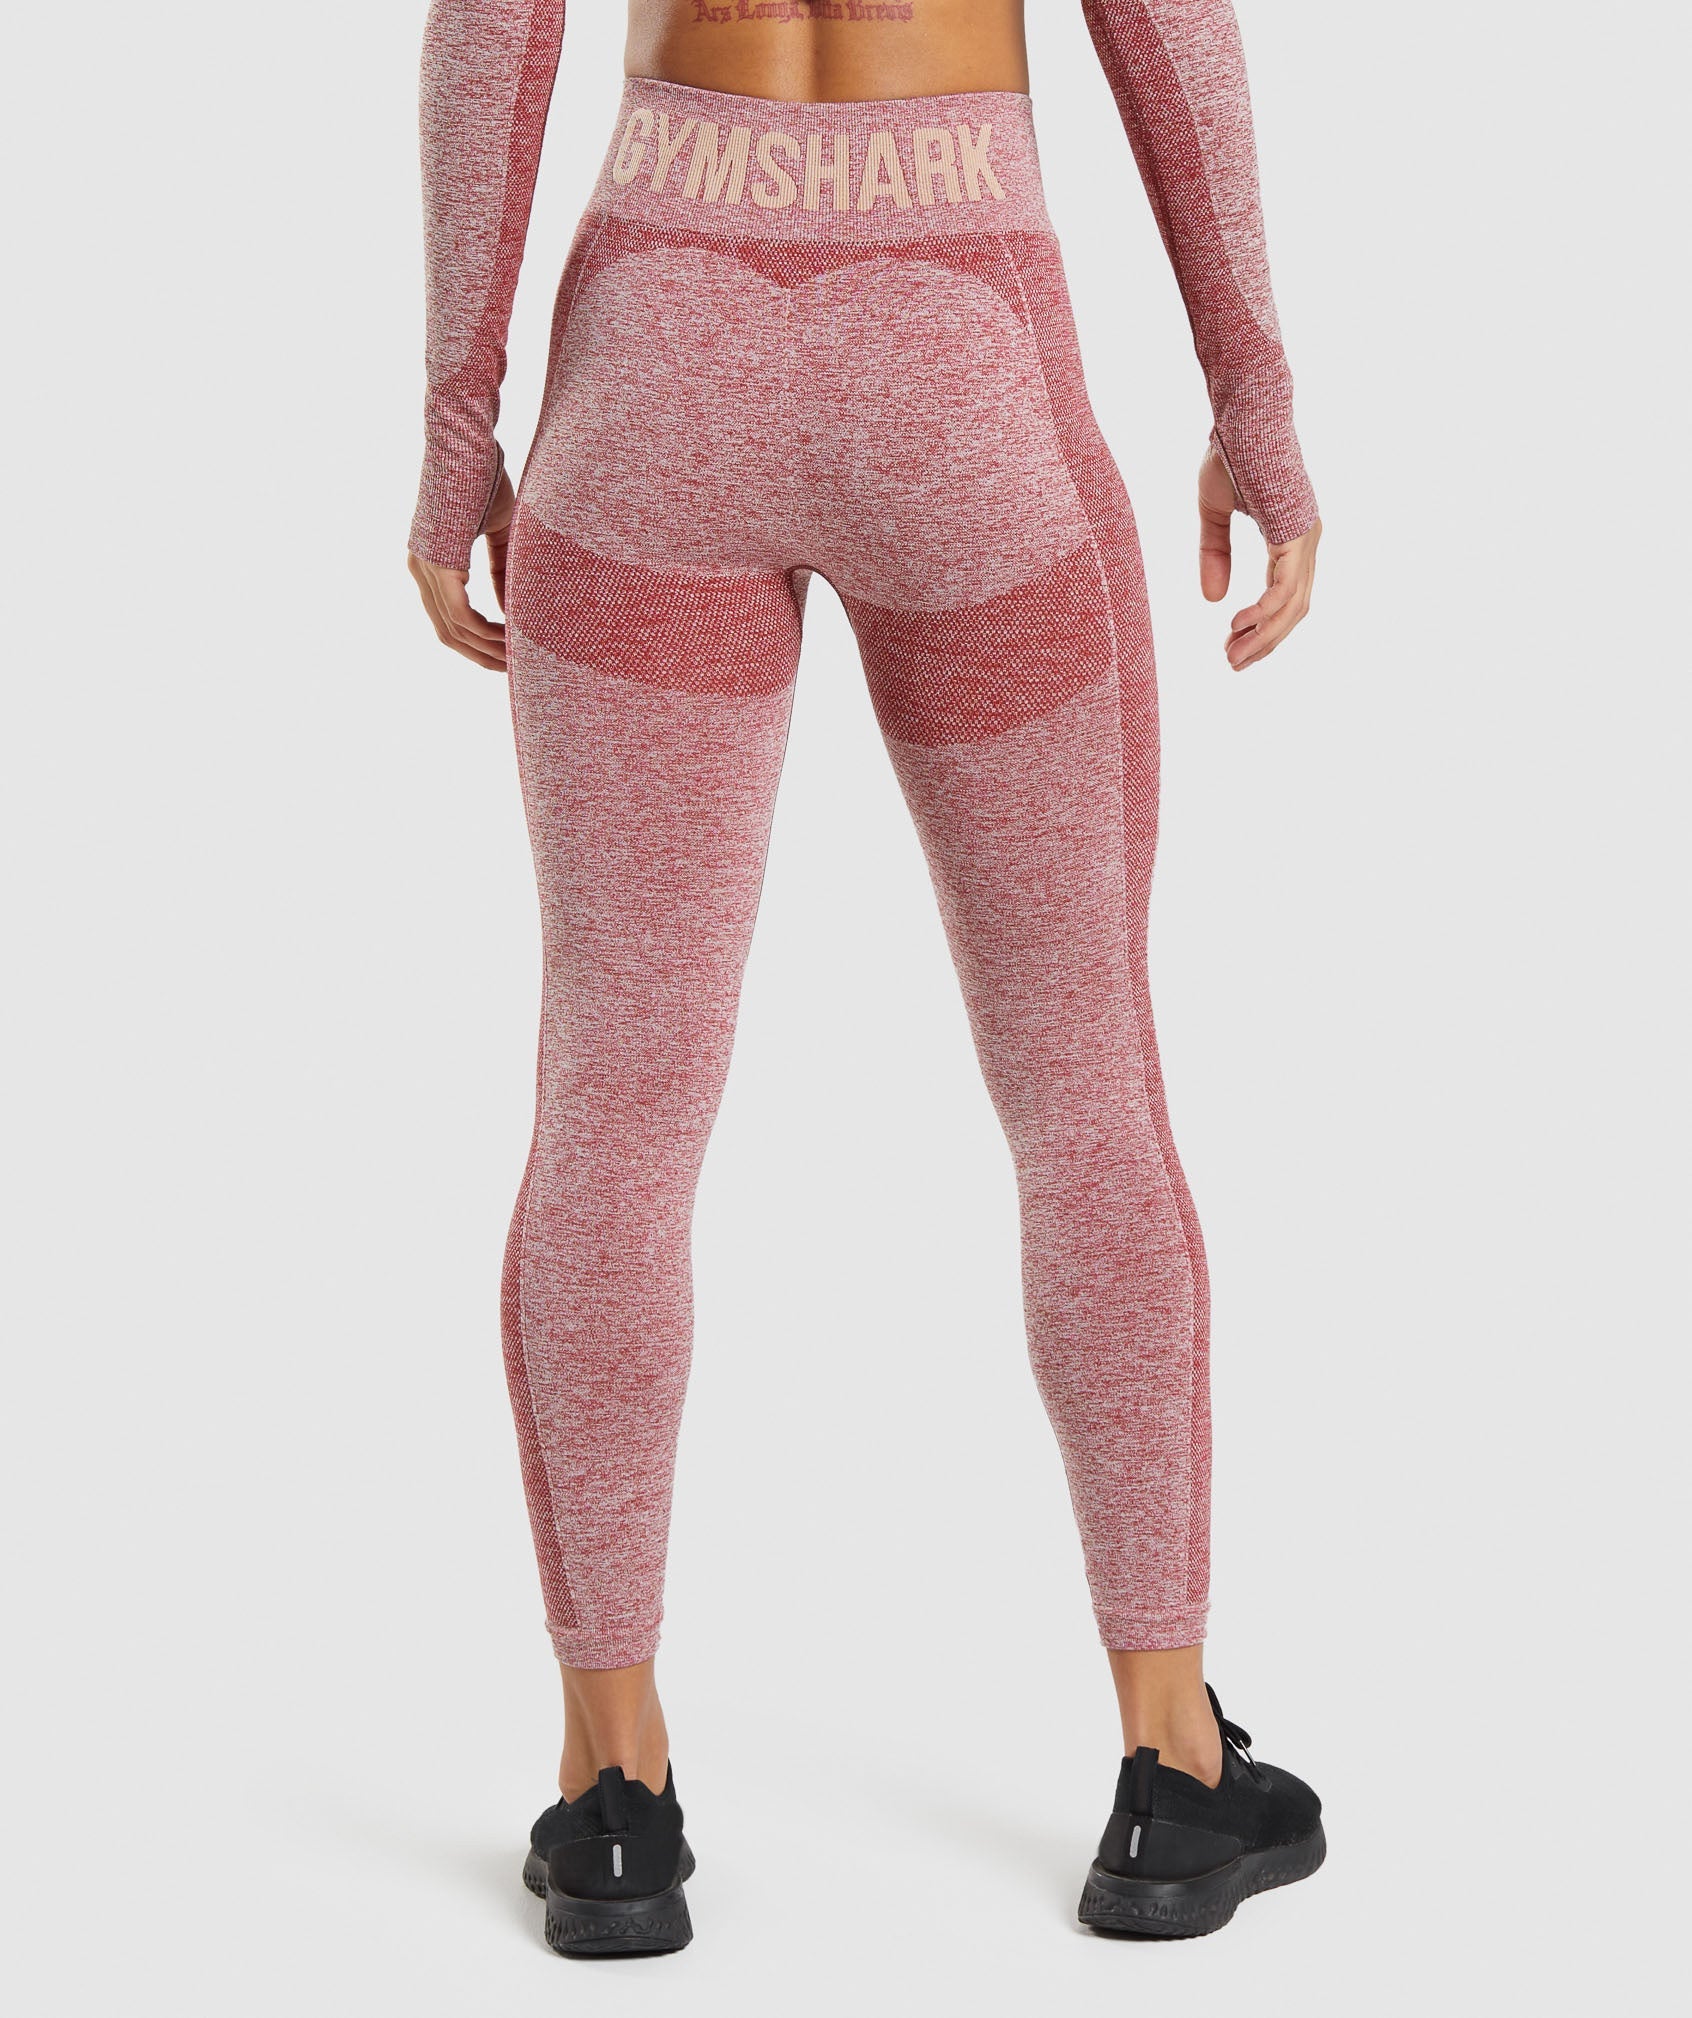 gymshark Energy + Seamless Leggings in Beet Red  Seamless leggings,  Gymshark flex leggings, Gymshark fit leggings